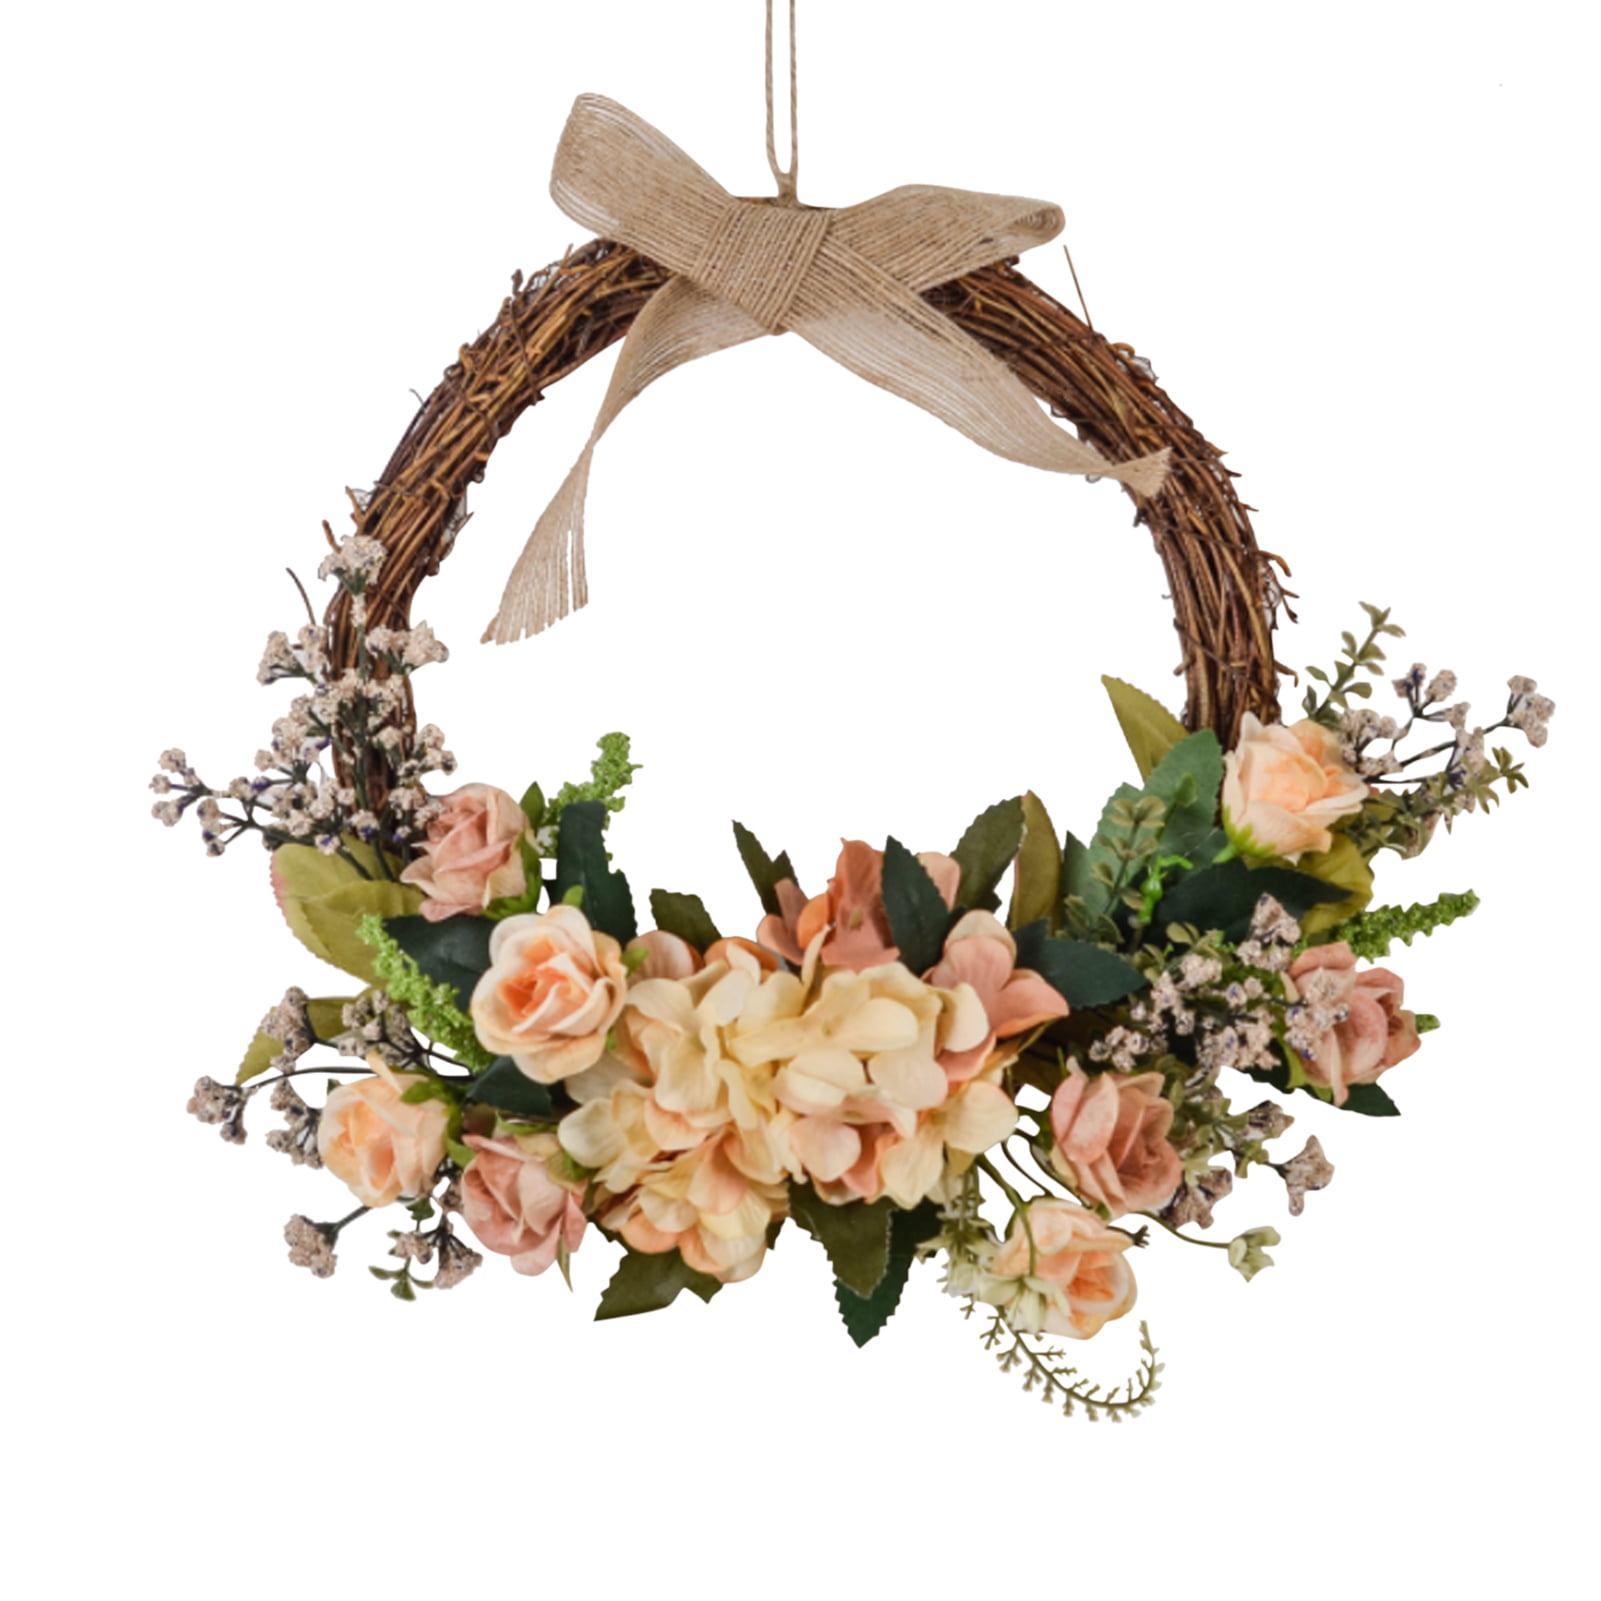 1 x Straw Wreath Sturdy Base Craft Wedding Decoration Material D:27cm T:3 cm 